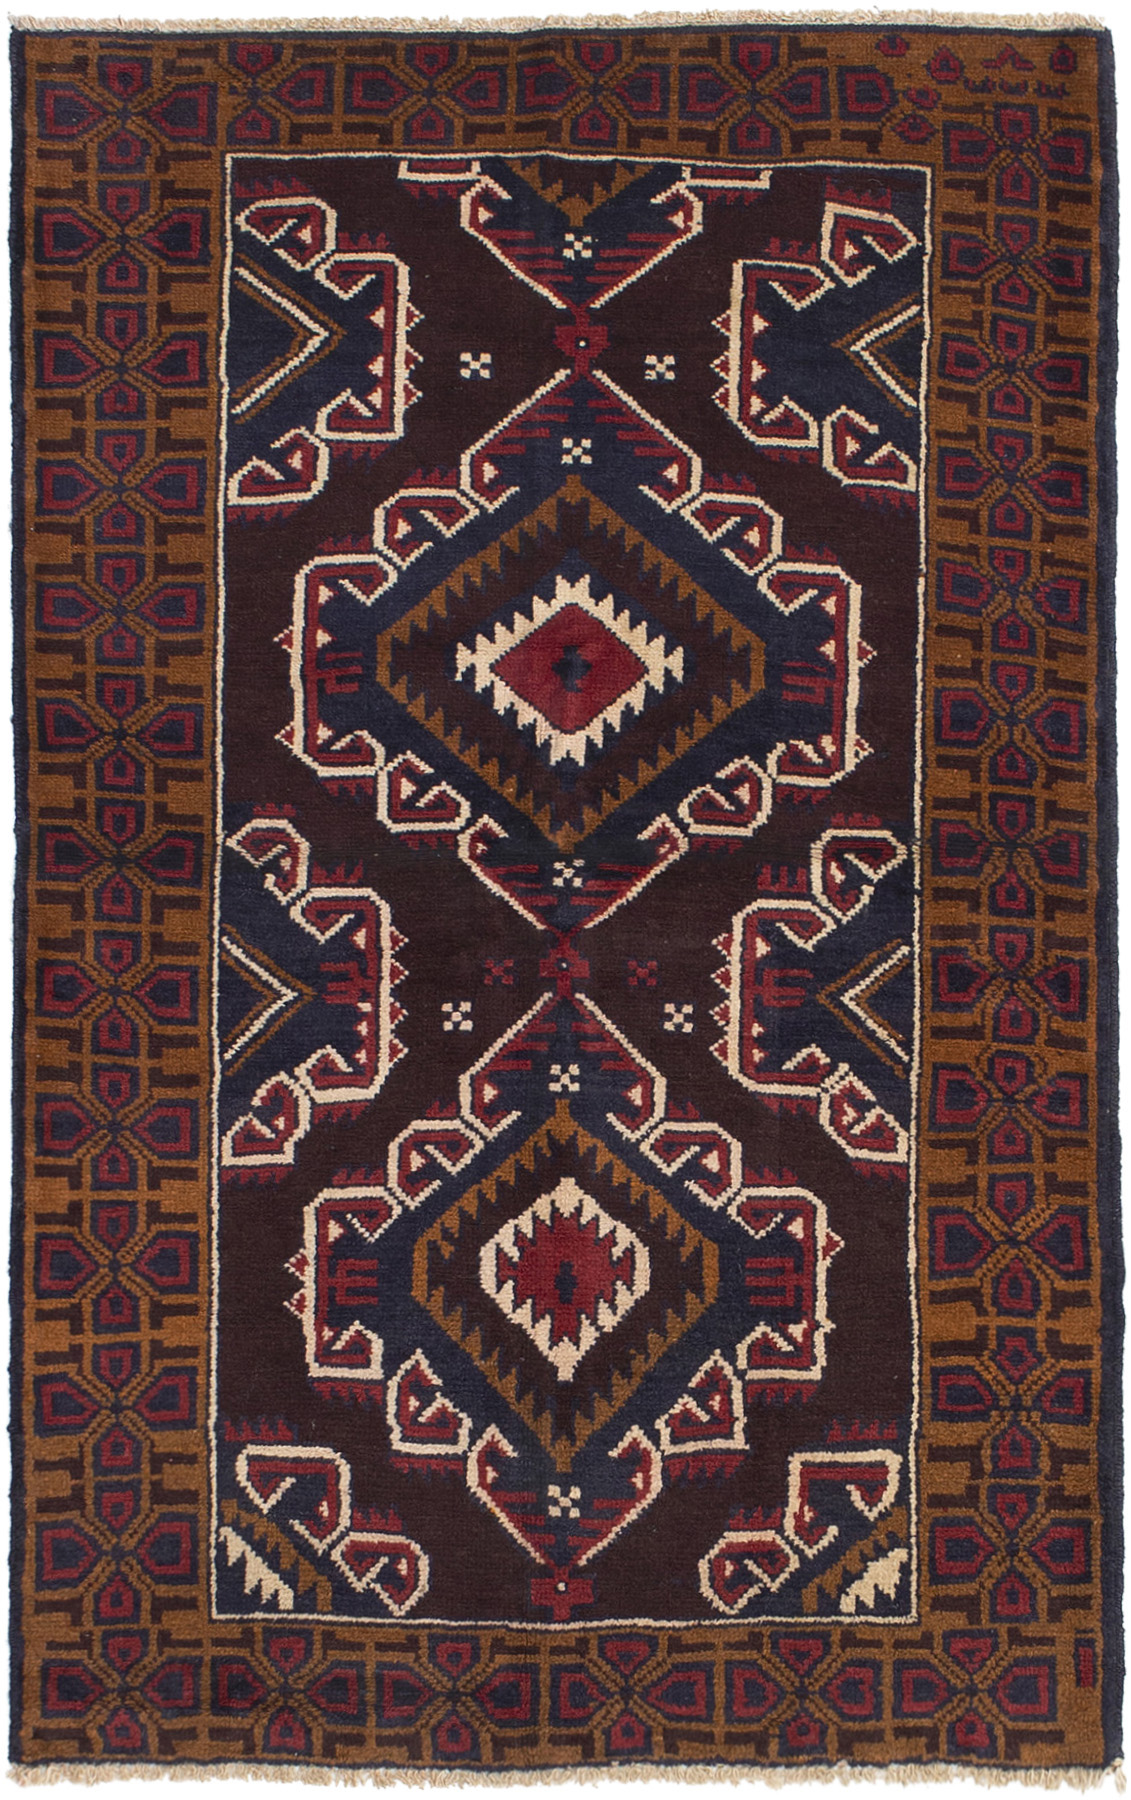 Hand-knotted Kazak Dark Burgundy Wool Rug 3'6" x 5'9" Size: 3'6" x 5'9"  